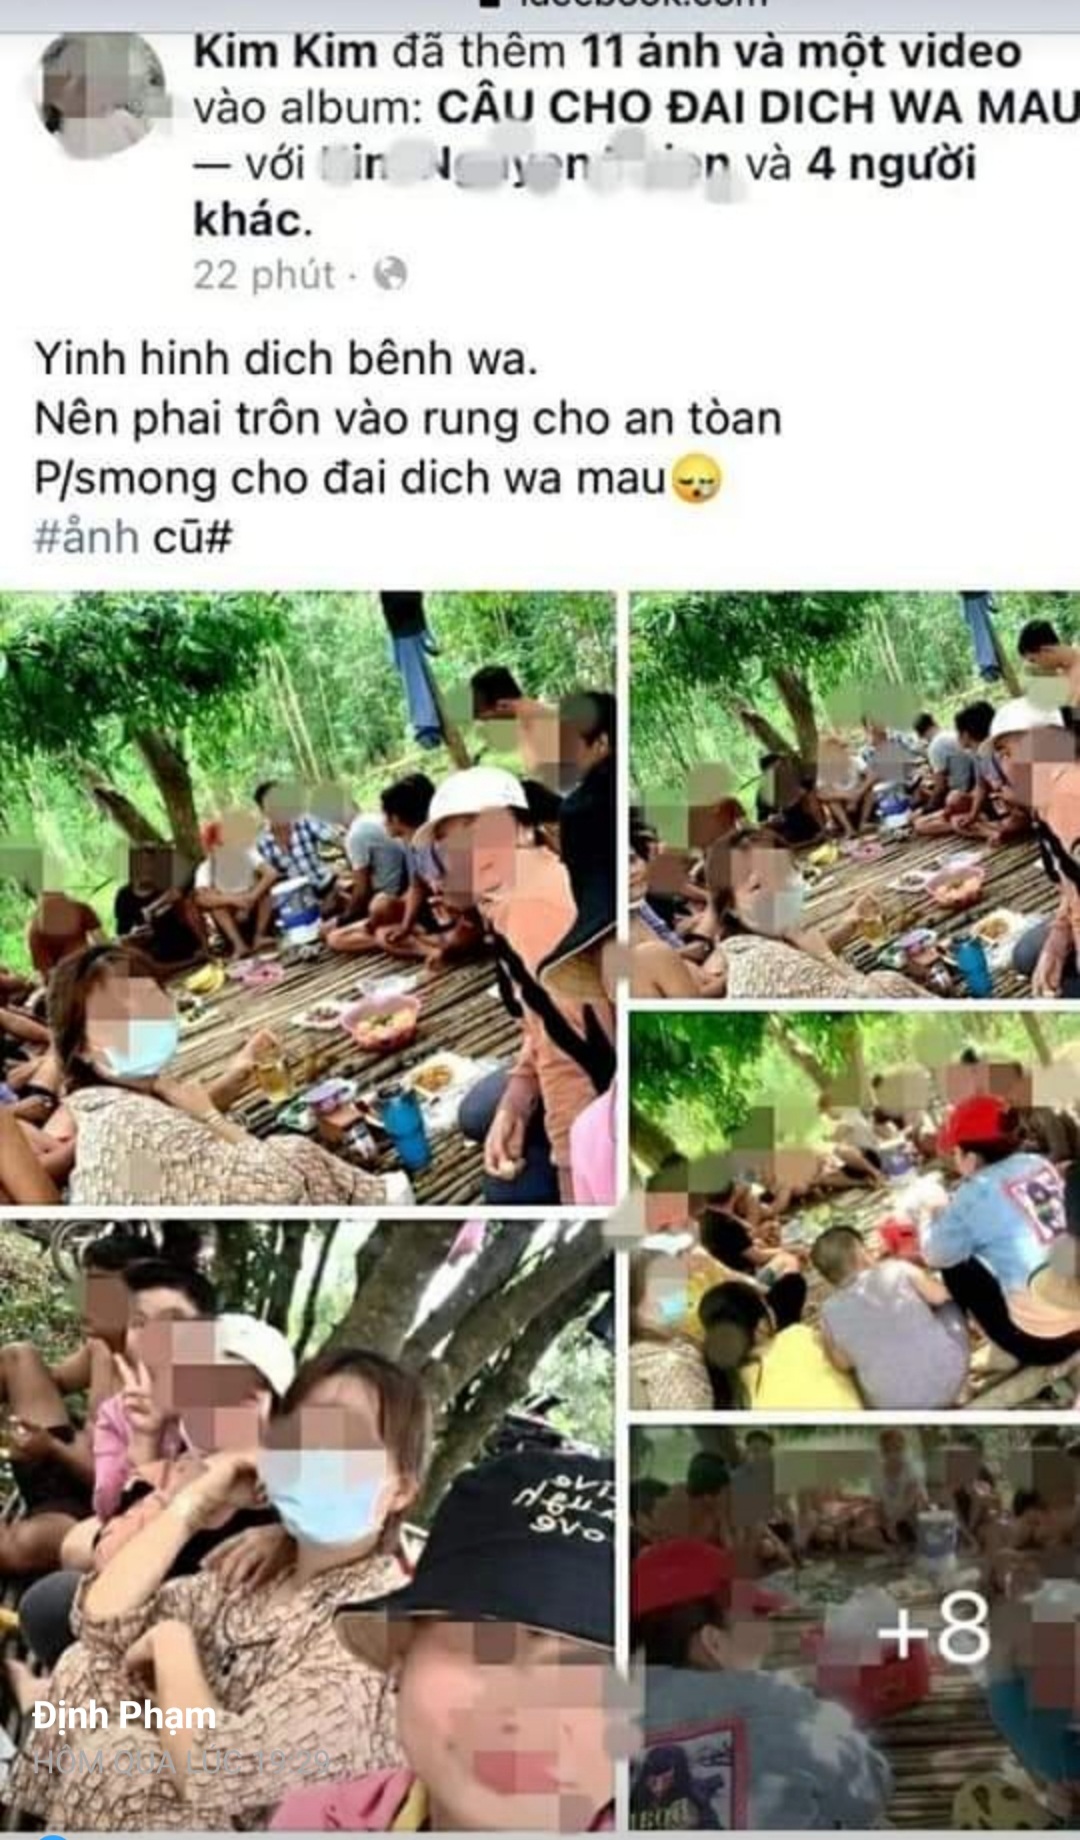 21 thanh niên vào rừng nhậu rồi khoe trên Facebook, bị phạt 210 triệu đồng - 1